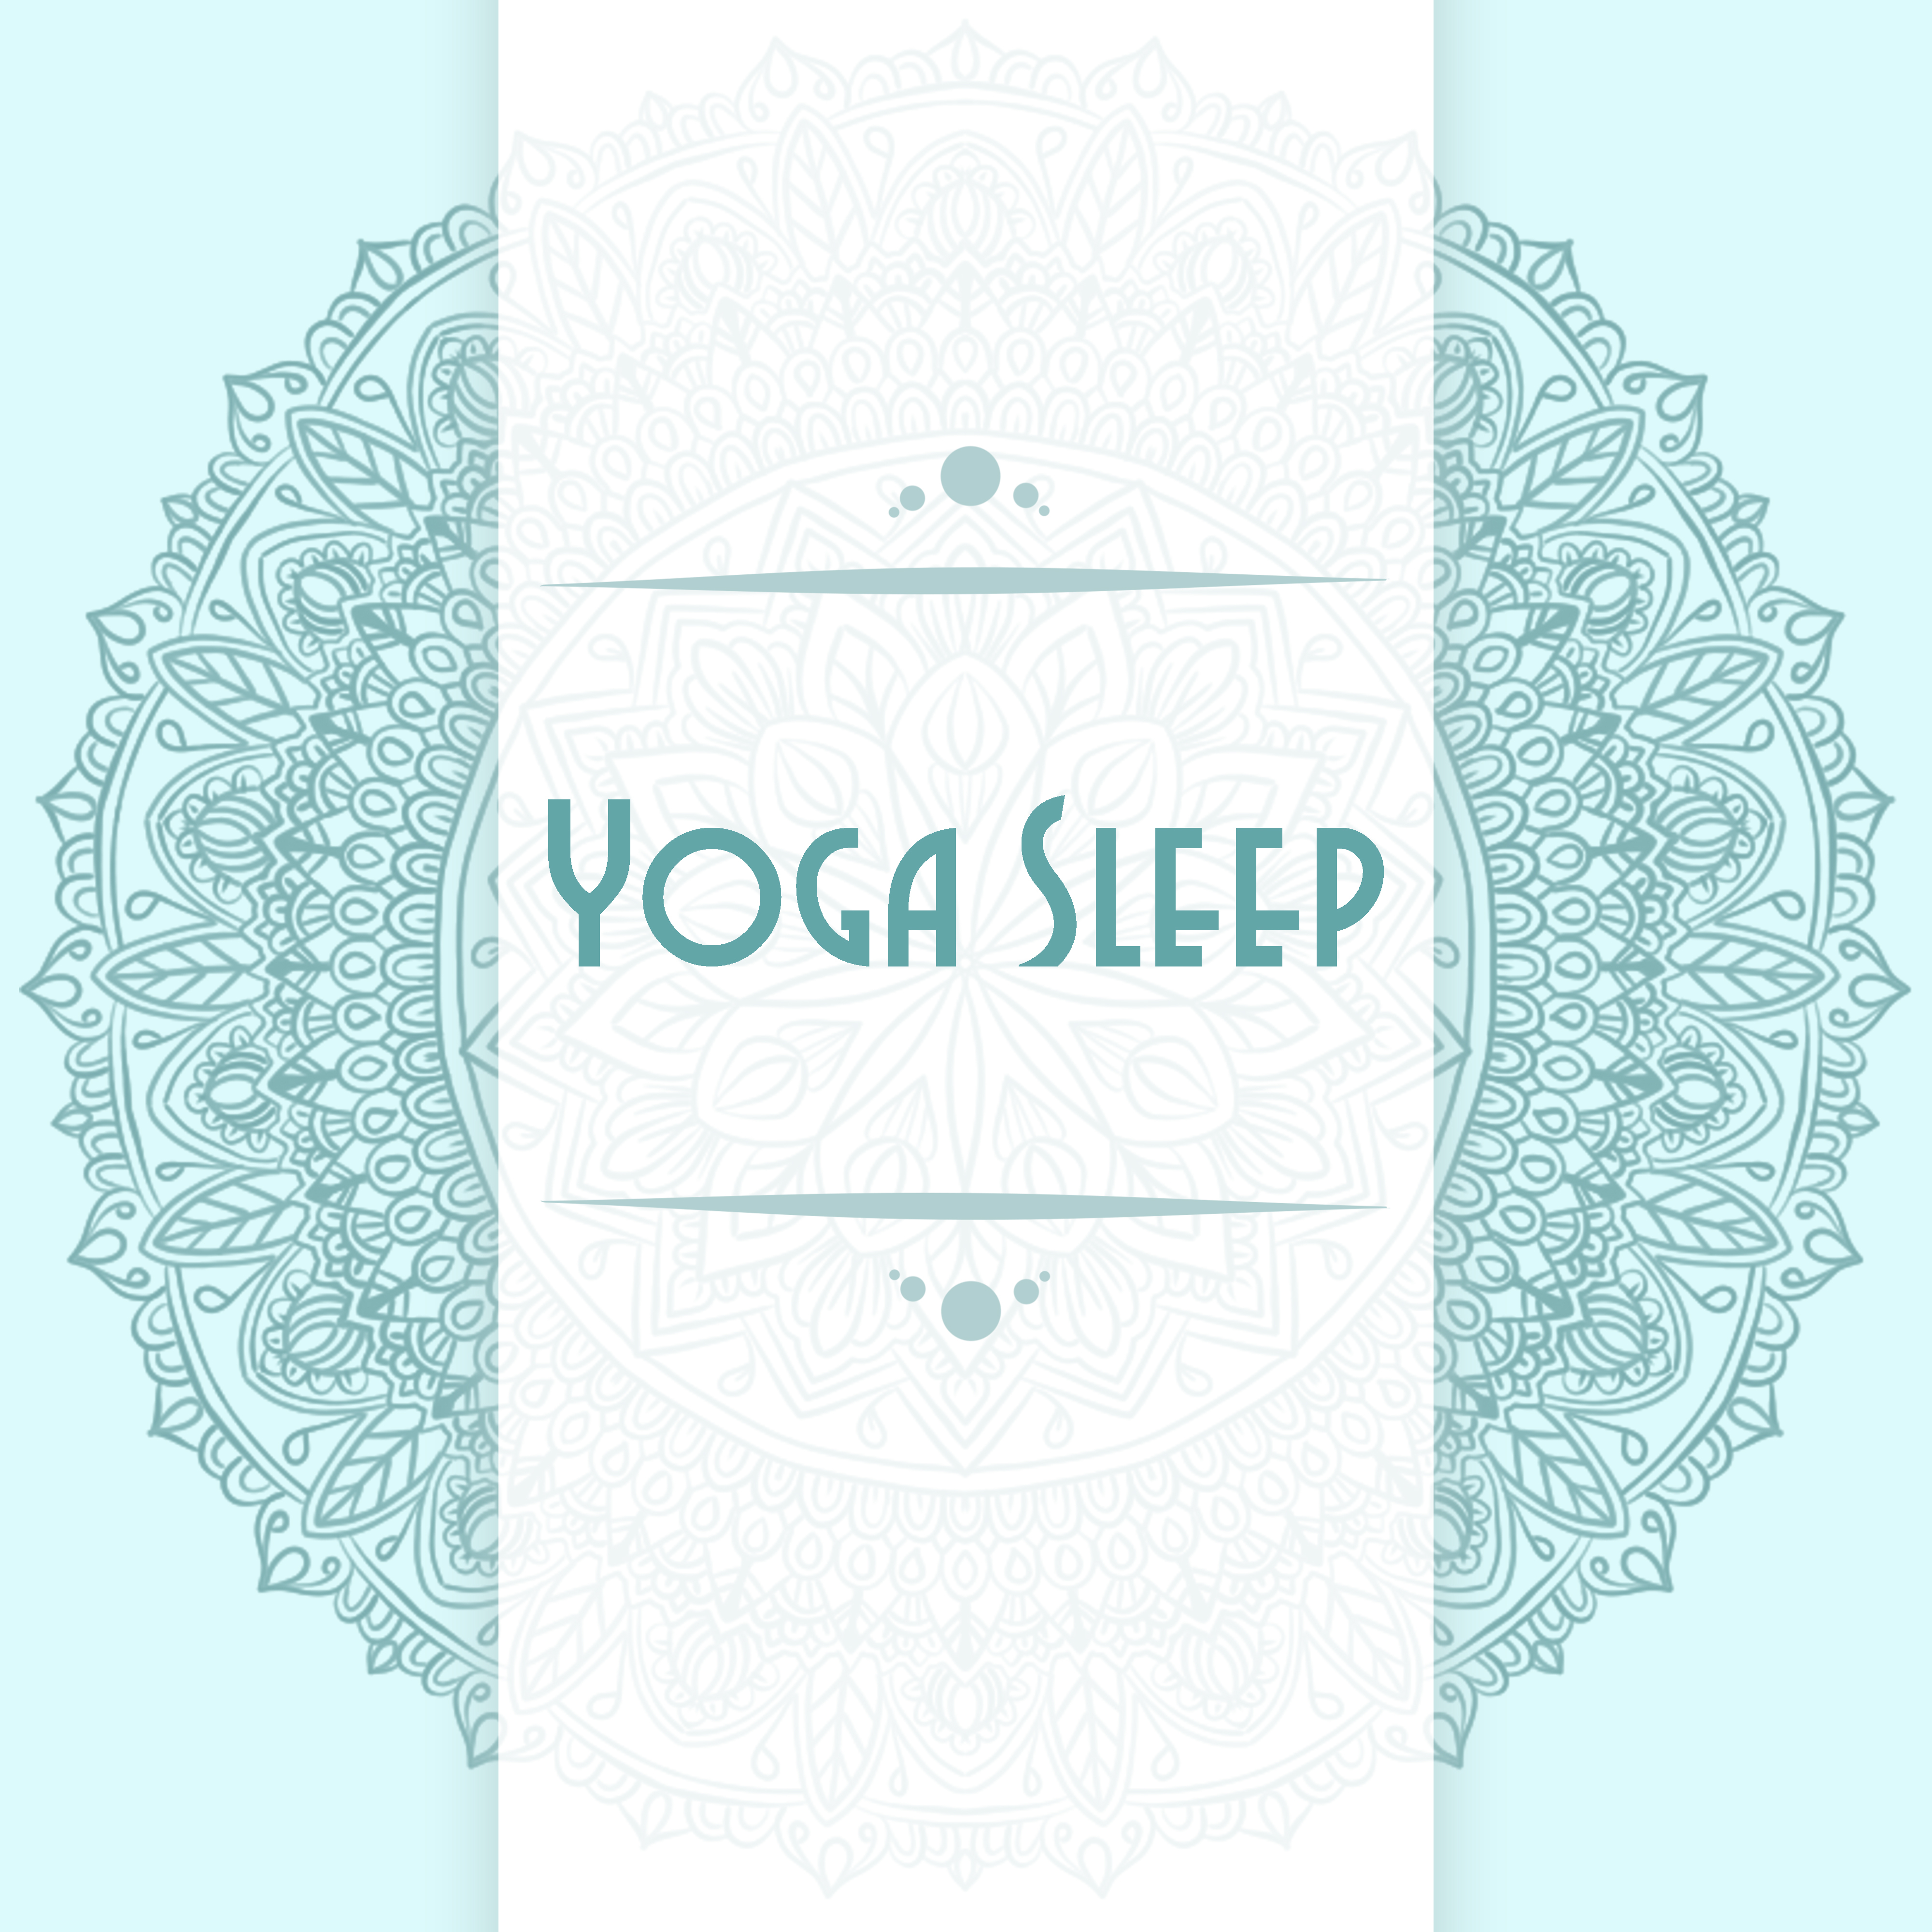 Yoga Sleep